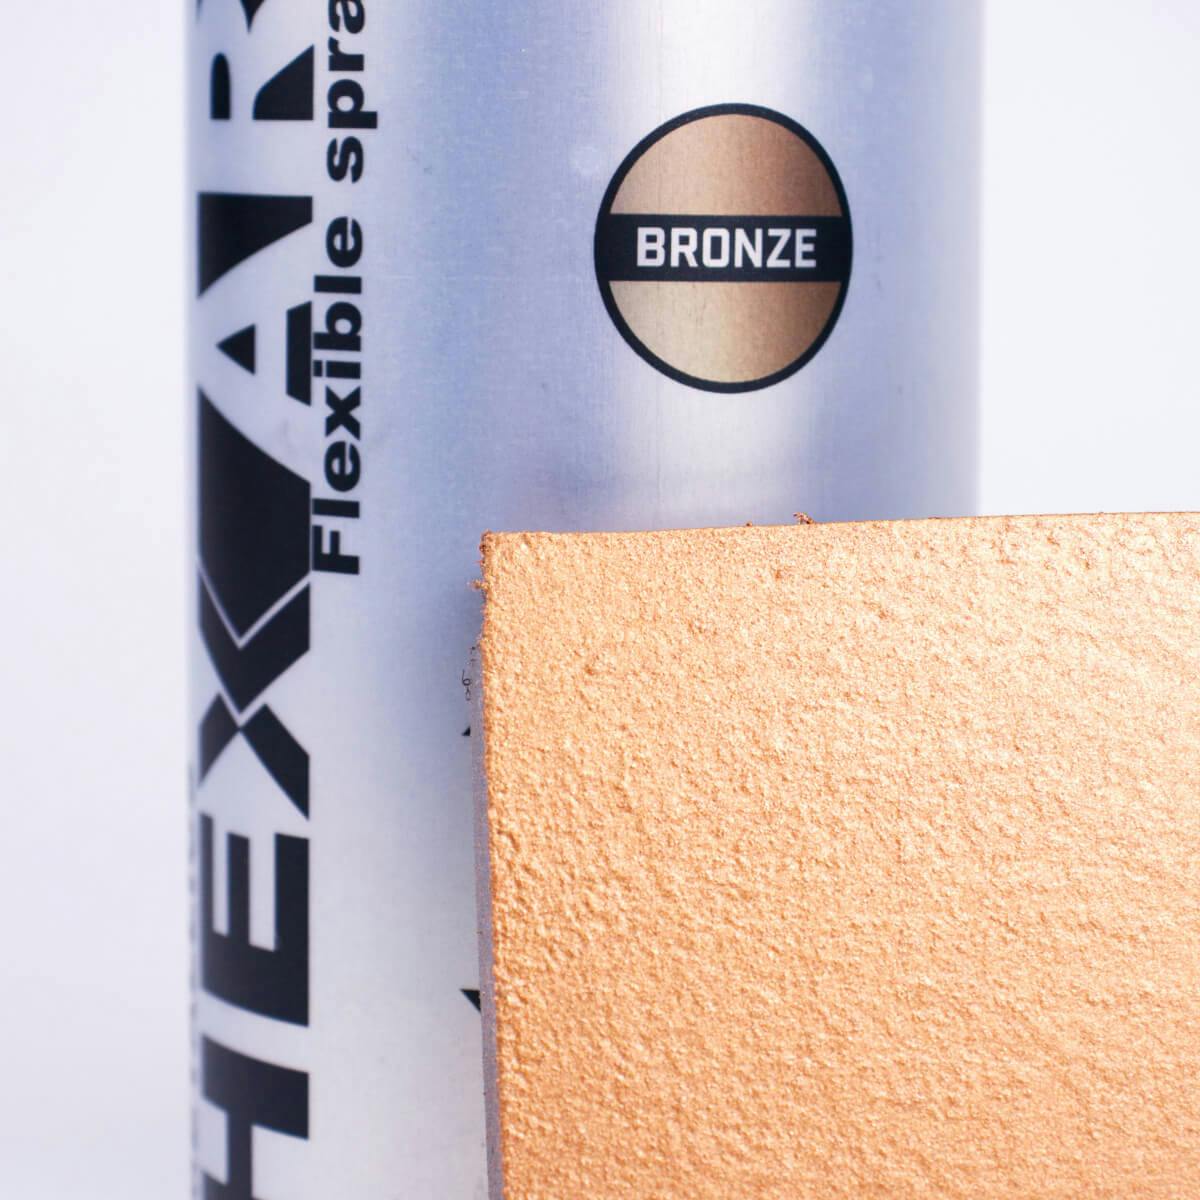 Nádoba a vzorník bronzové HexArt barvy ve spreji